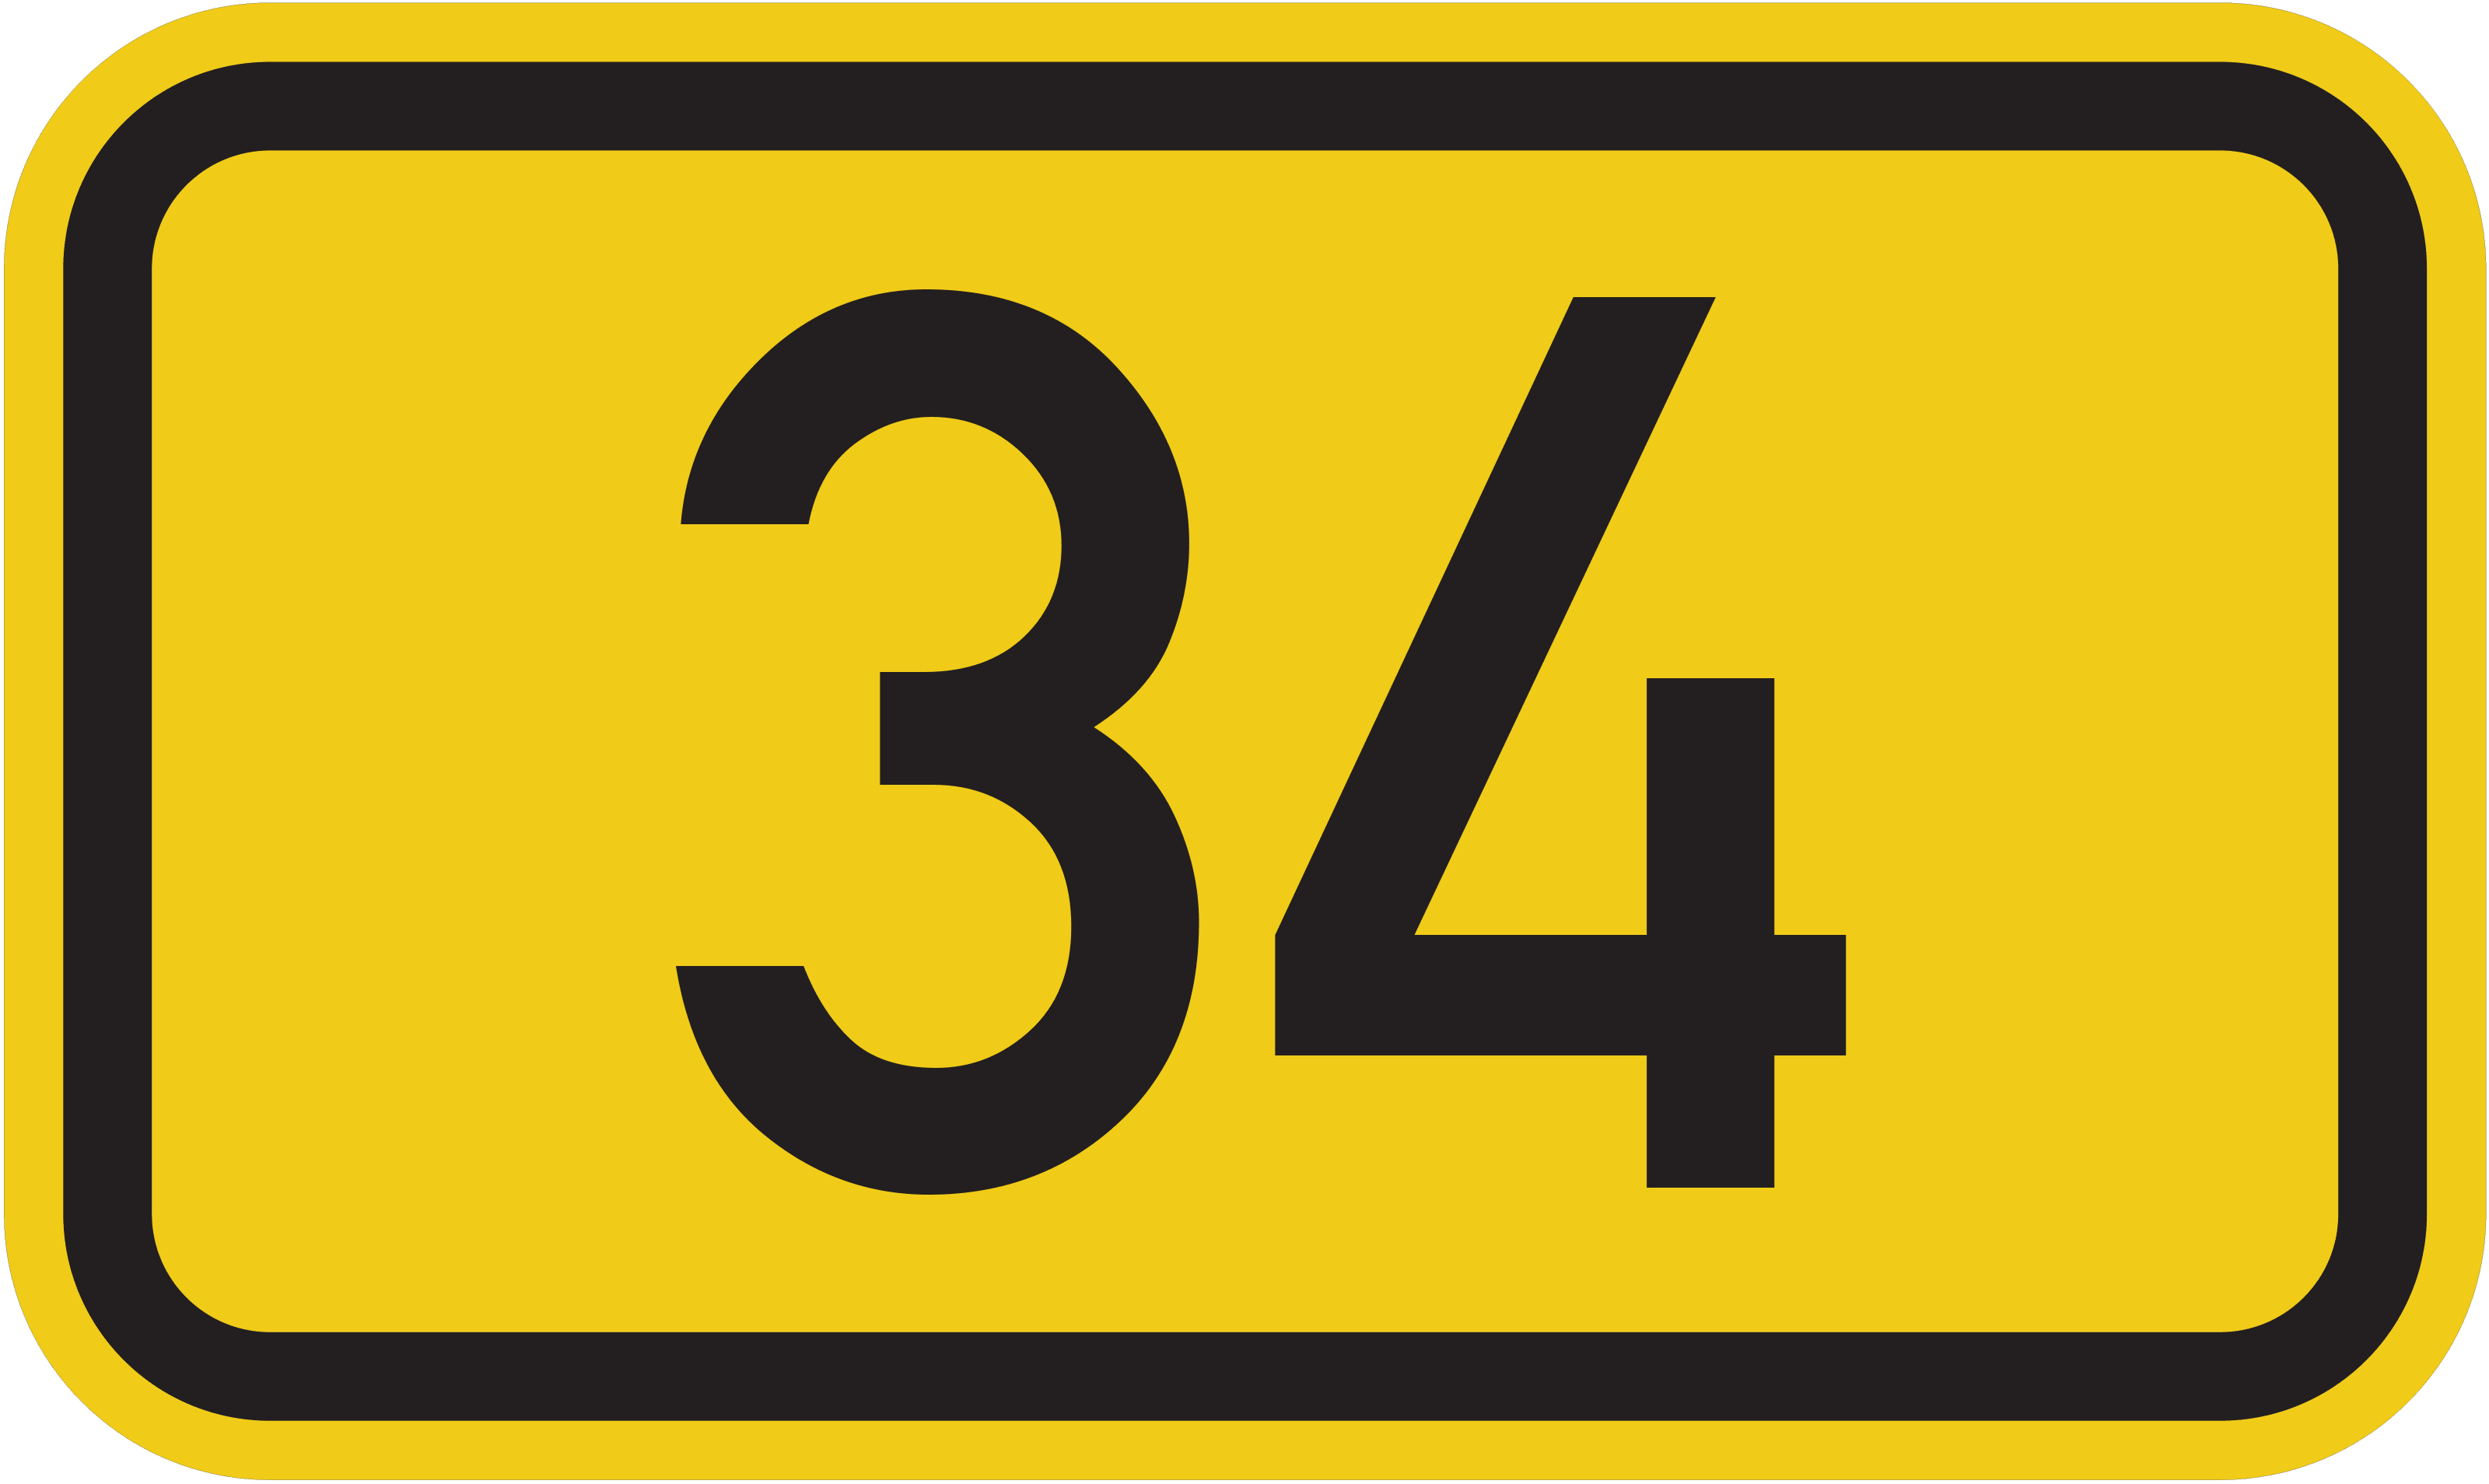 Bundesstraße B 34